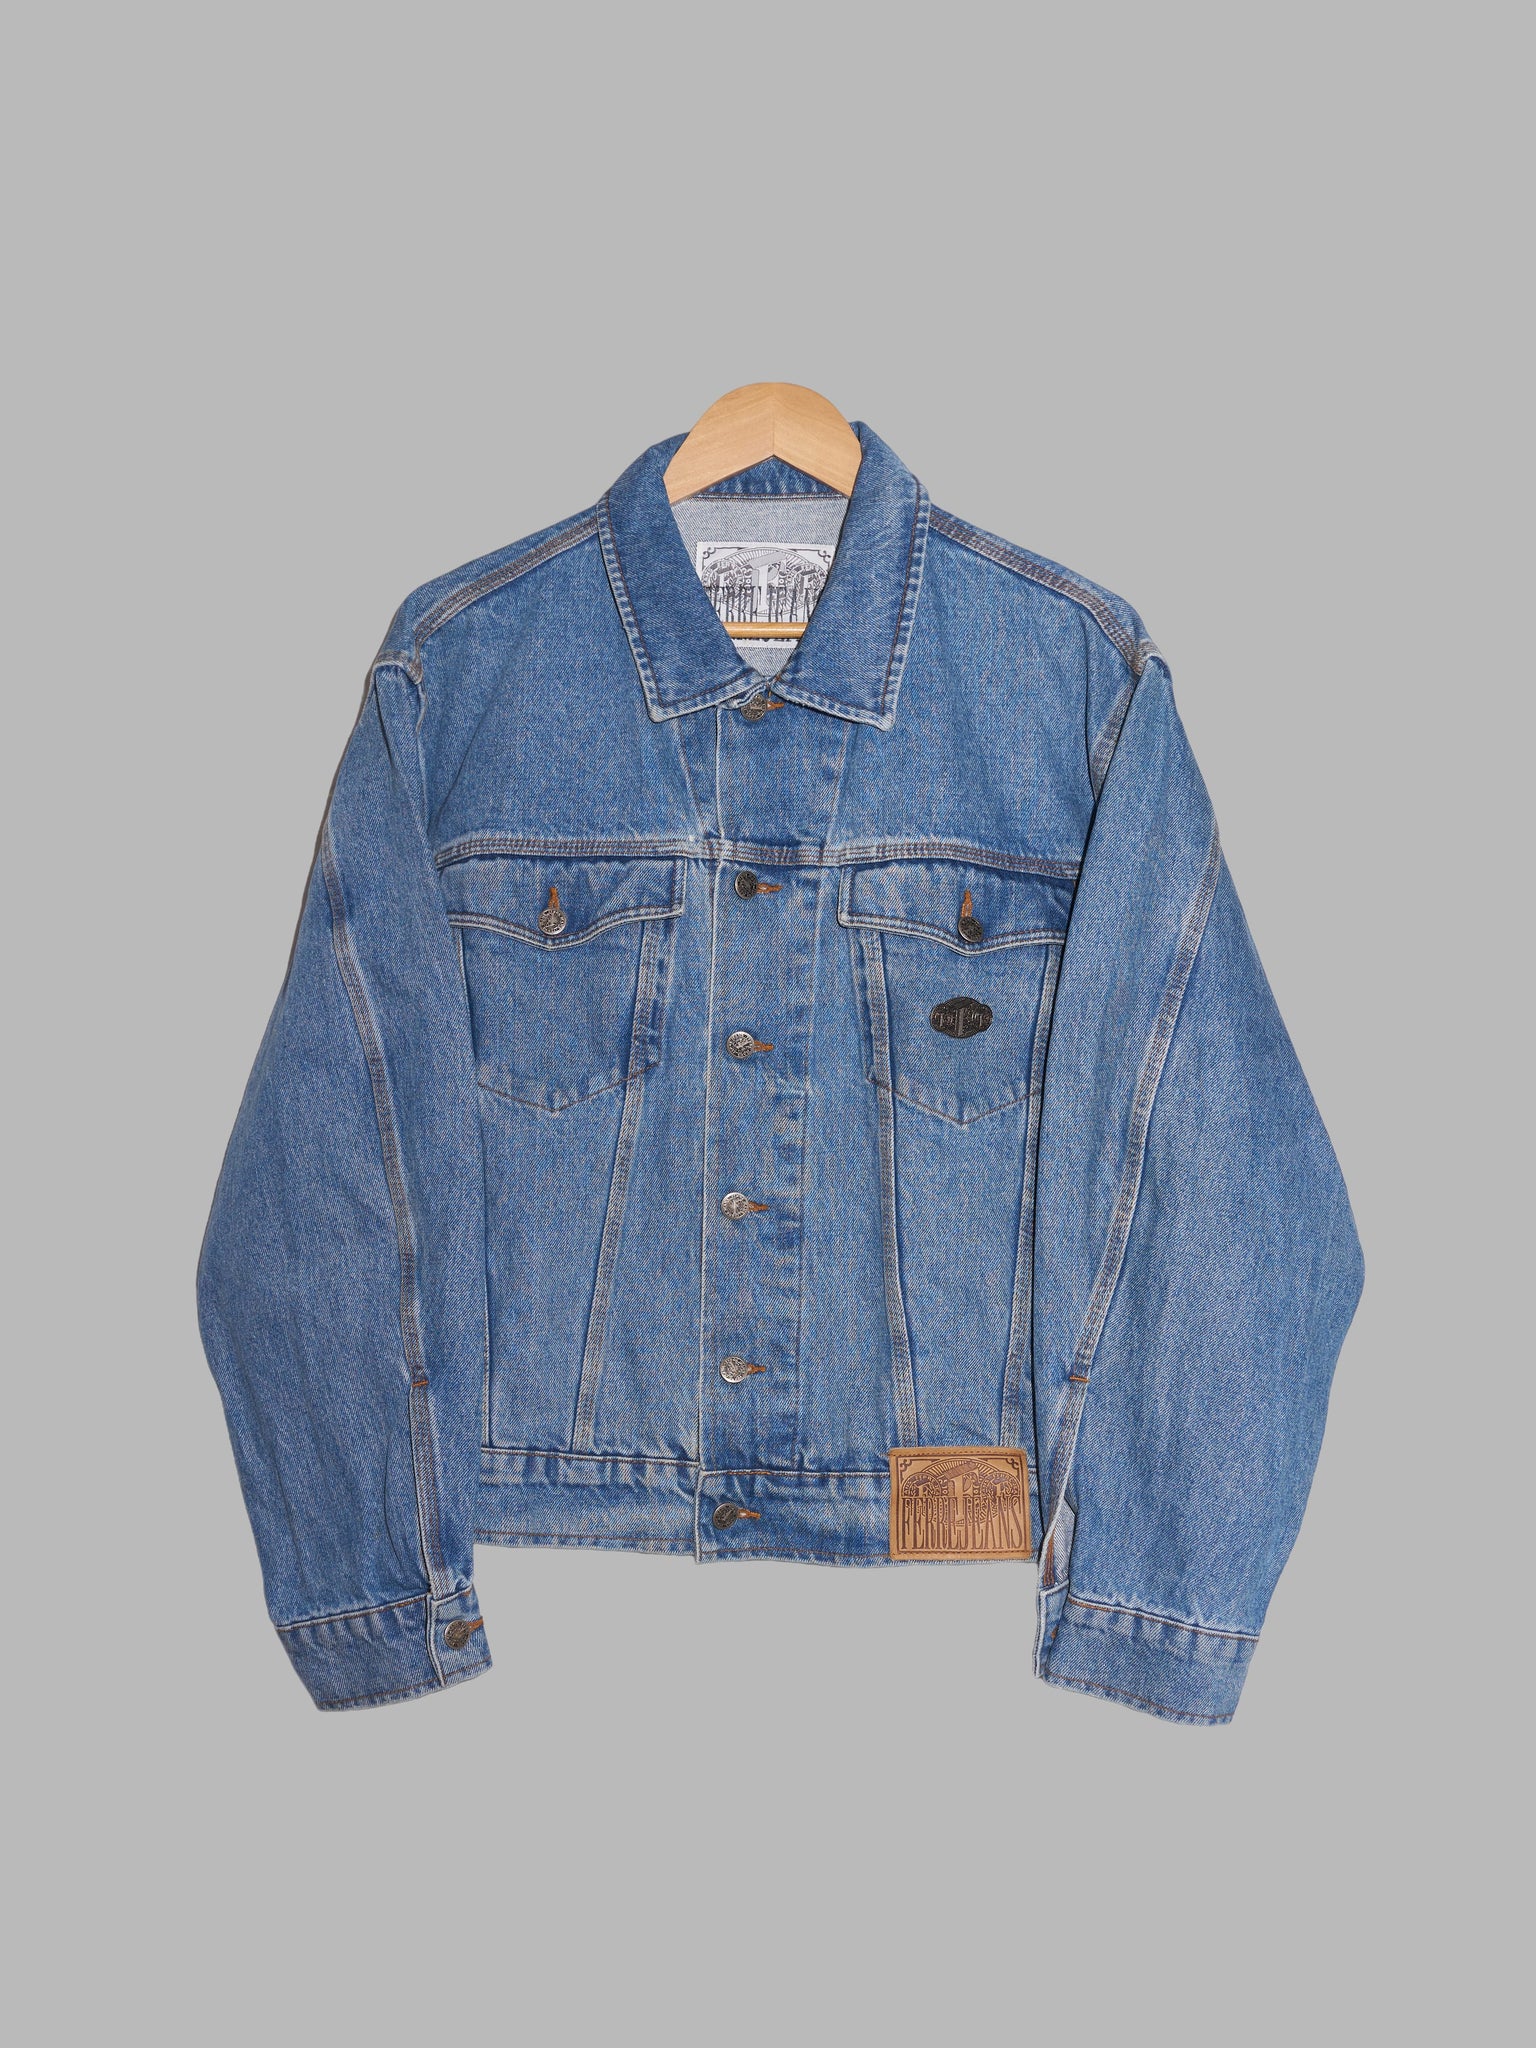 Gianfranco Ferre Jeans 1990s washed blue denim trucker jacket